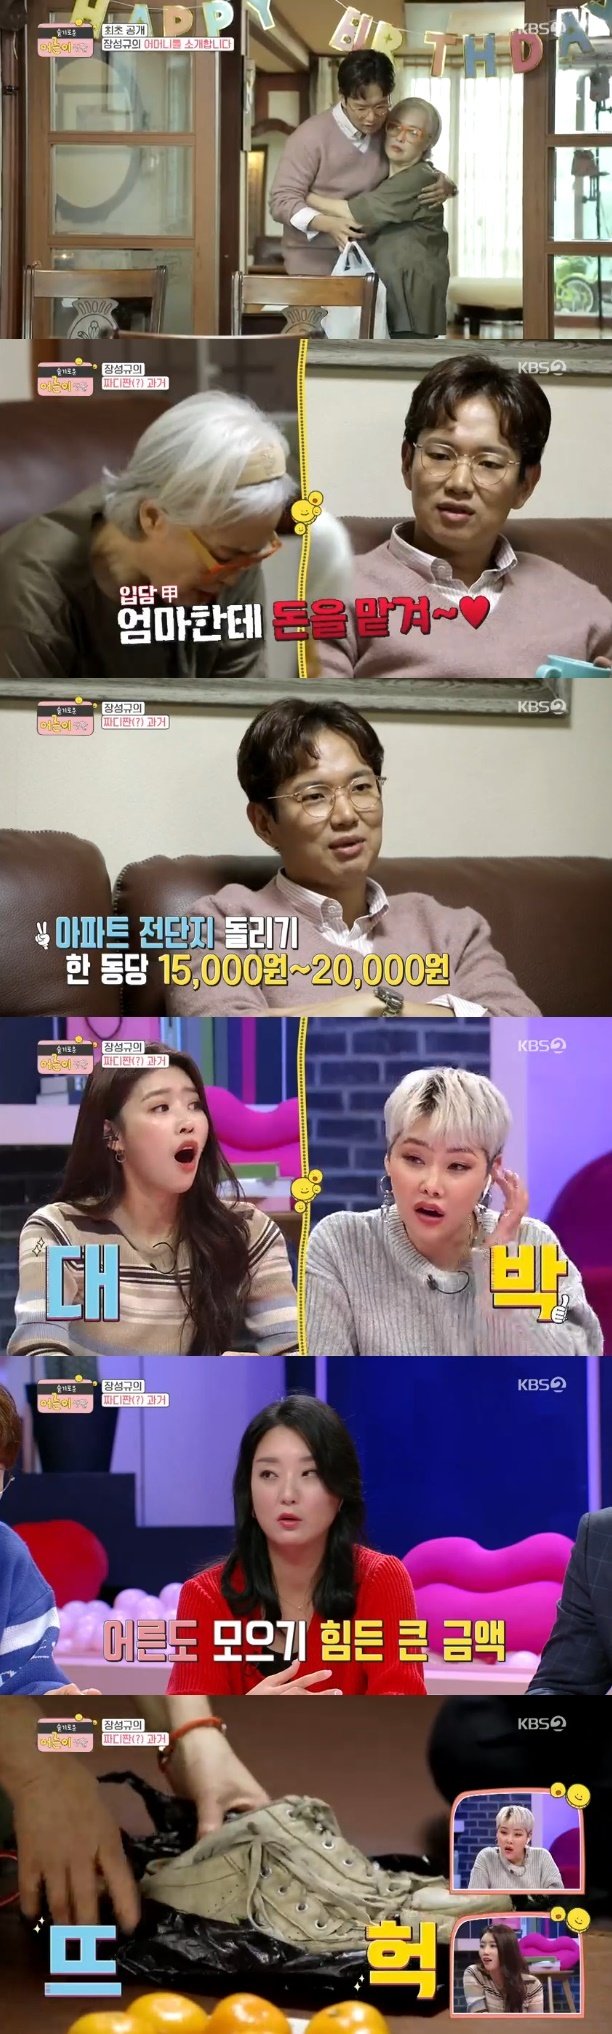 KBS 2TV ‘슬기로운 어른이 생활’ 캡처